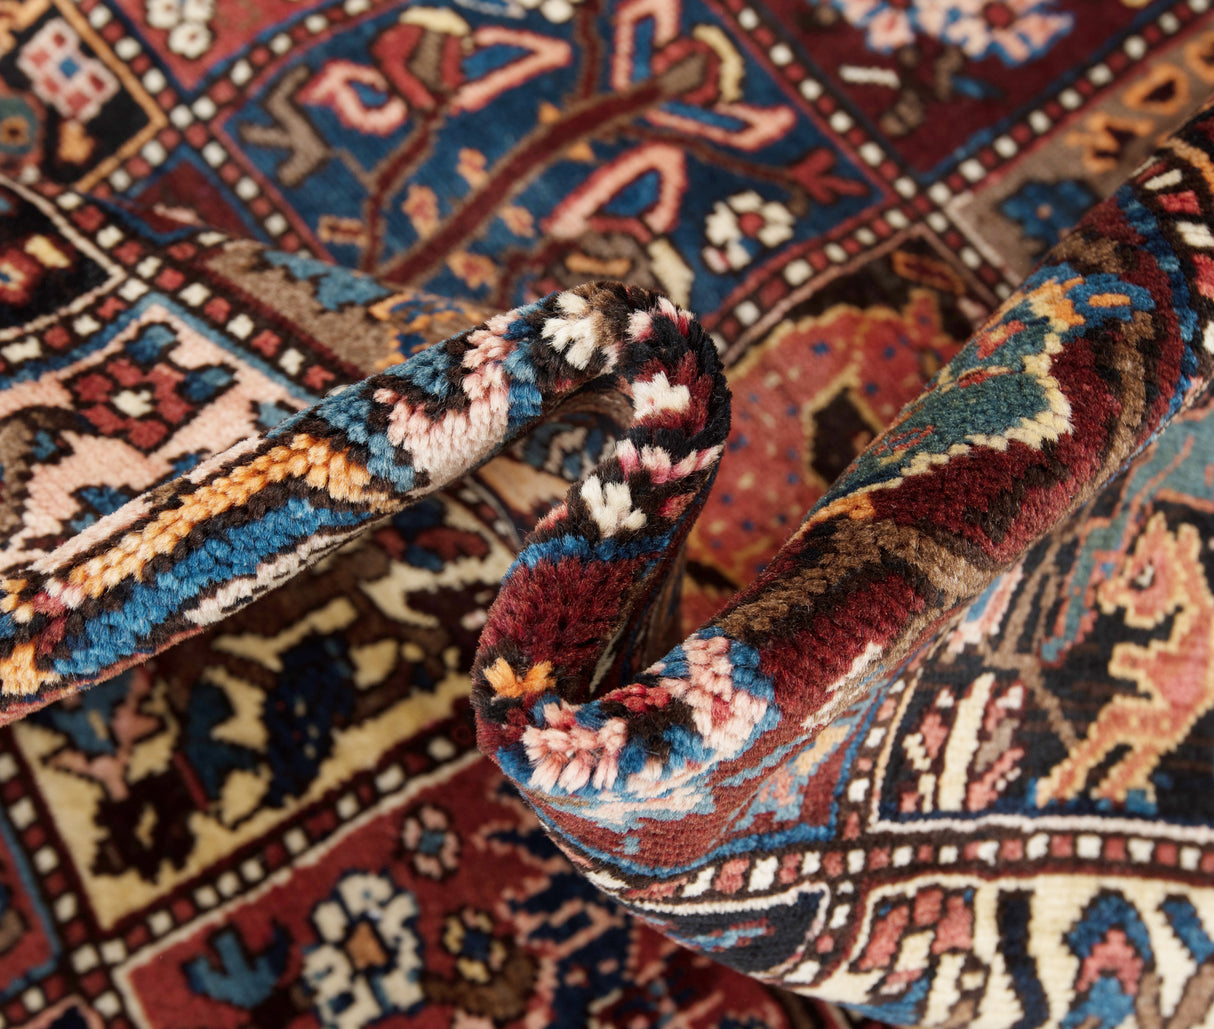 Carpete persa Bakhtiar | 303 x 160 cm